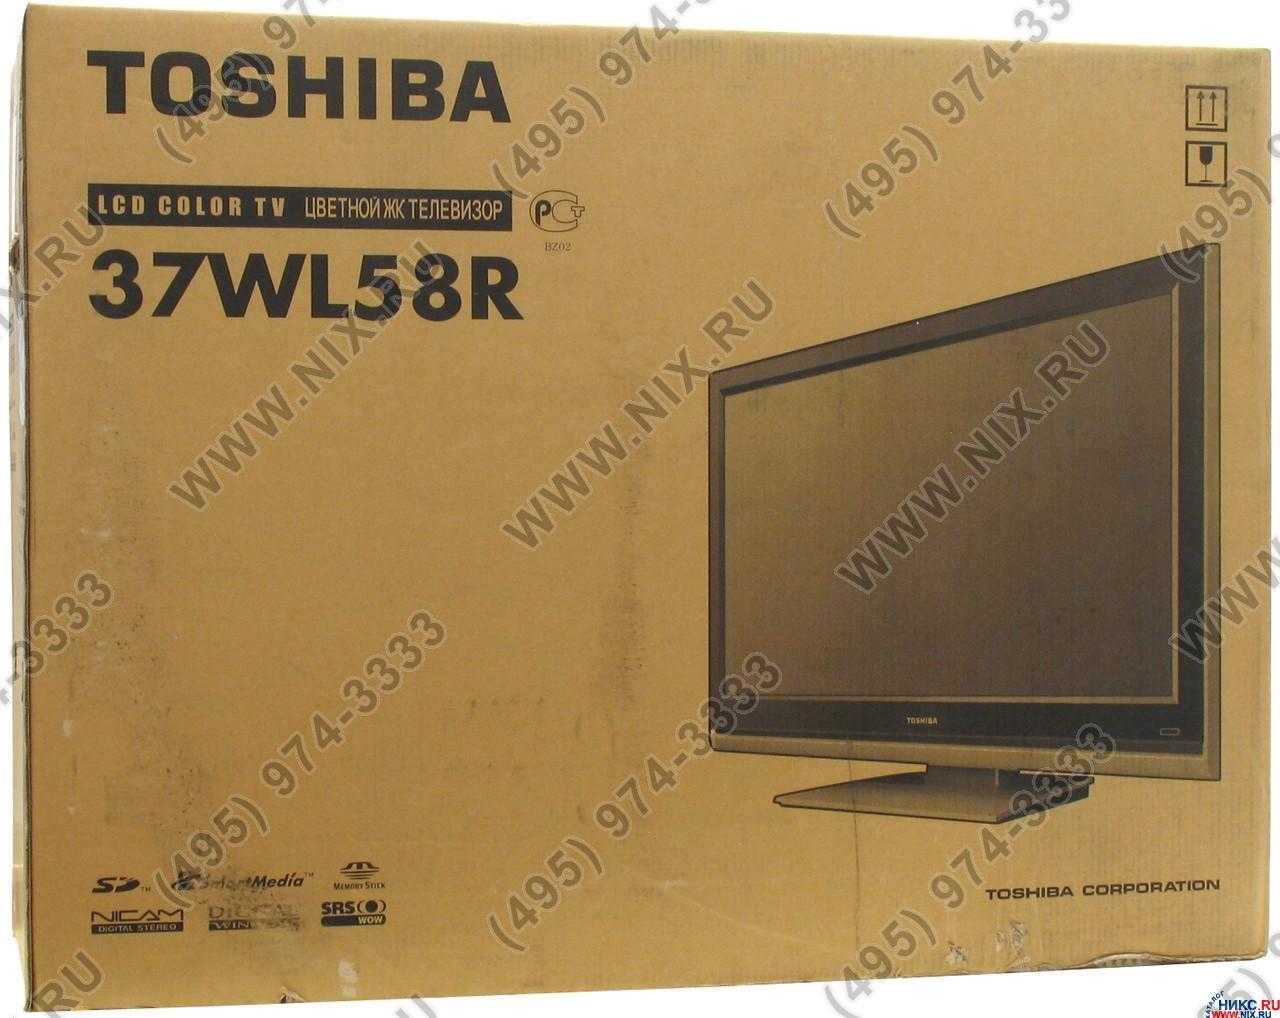 Toshiba 42sl833 купить по акционной цене , отзывы и обзоры.